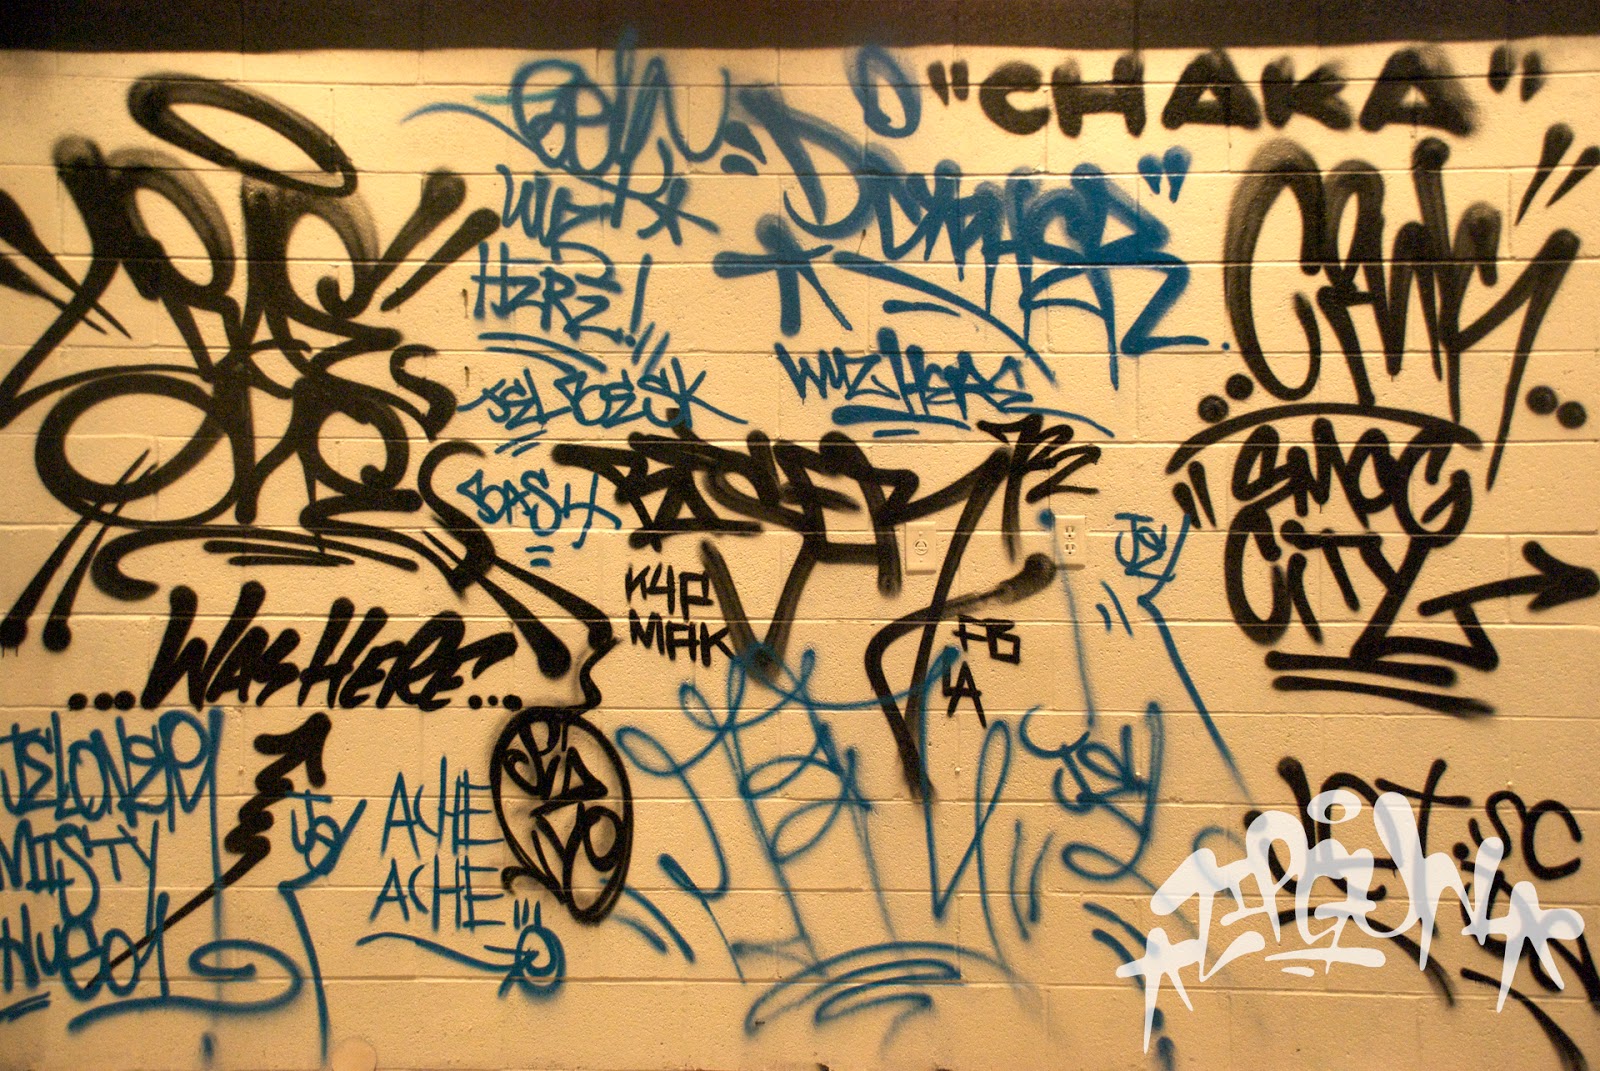 ABCDEFridays: Graffiti